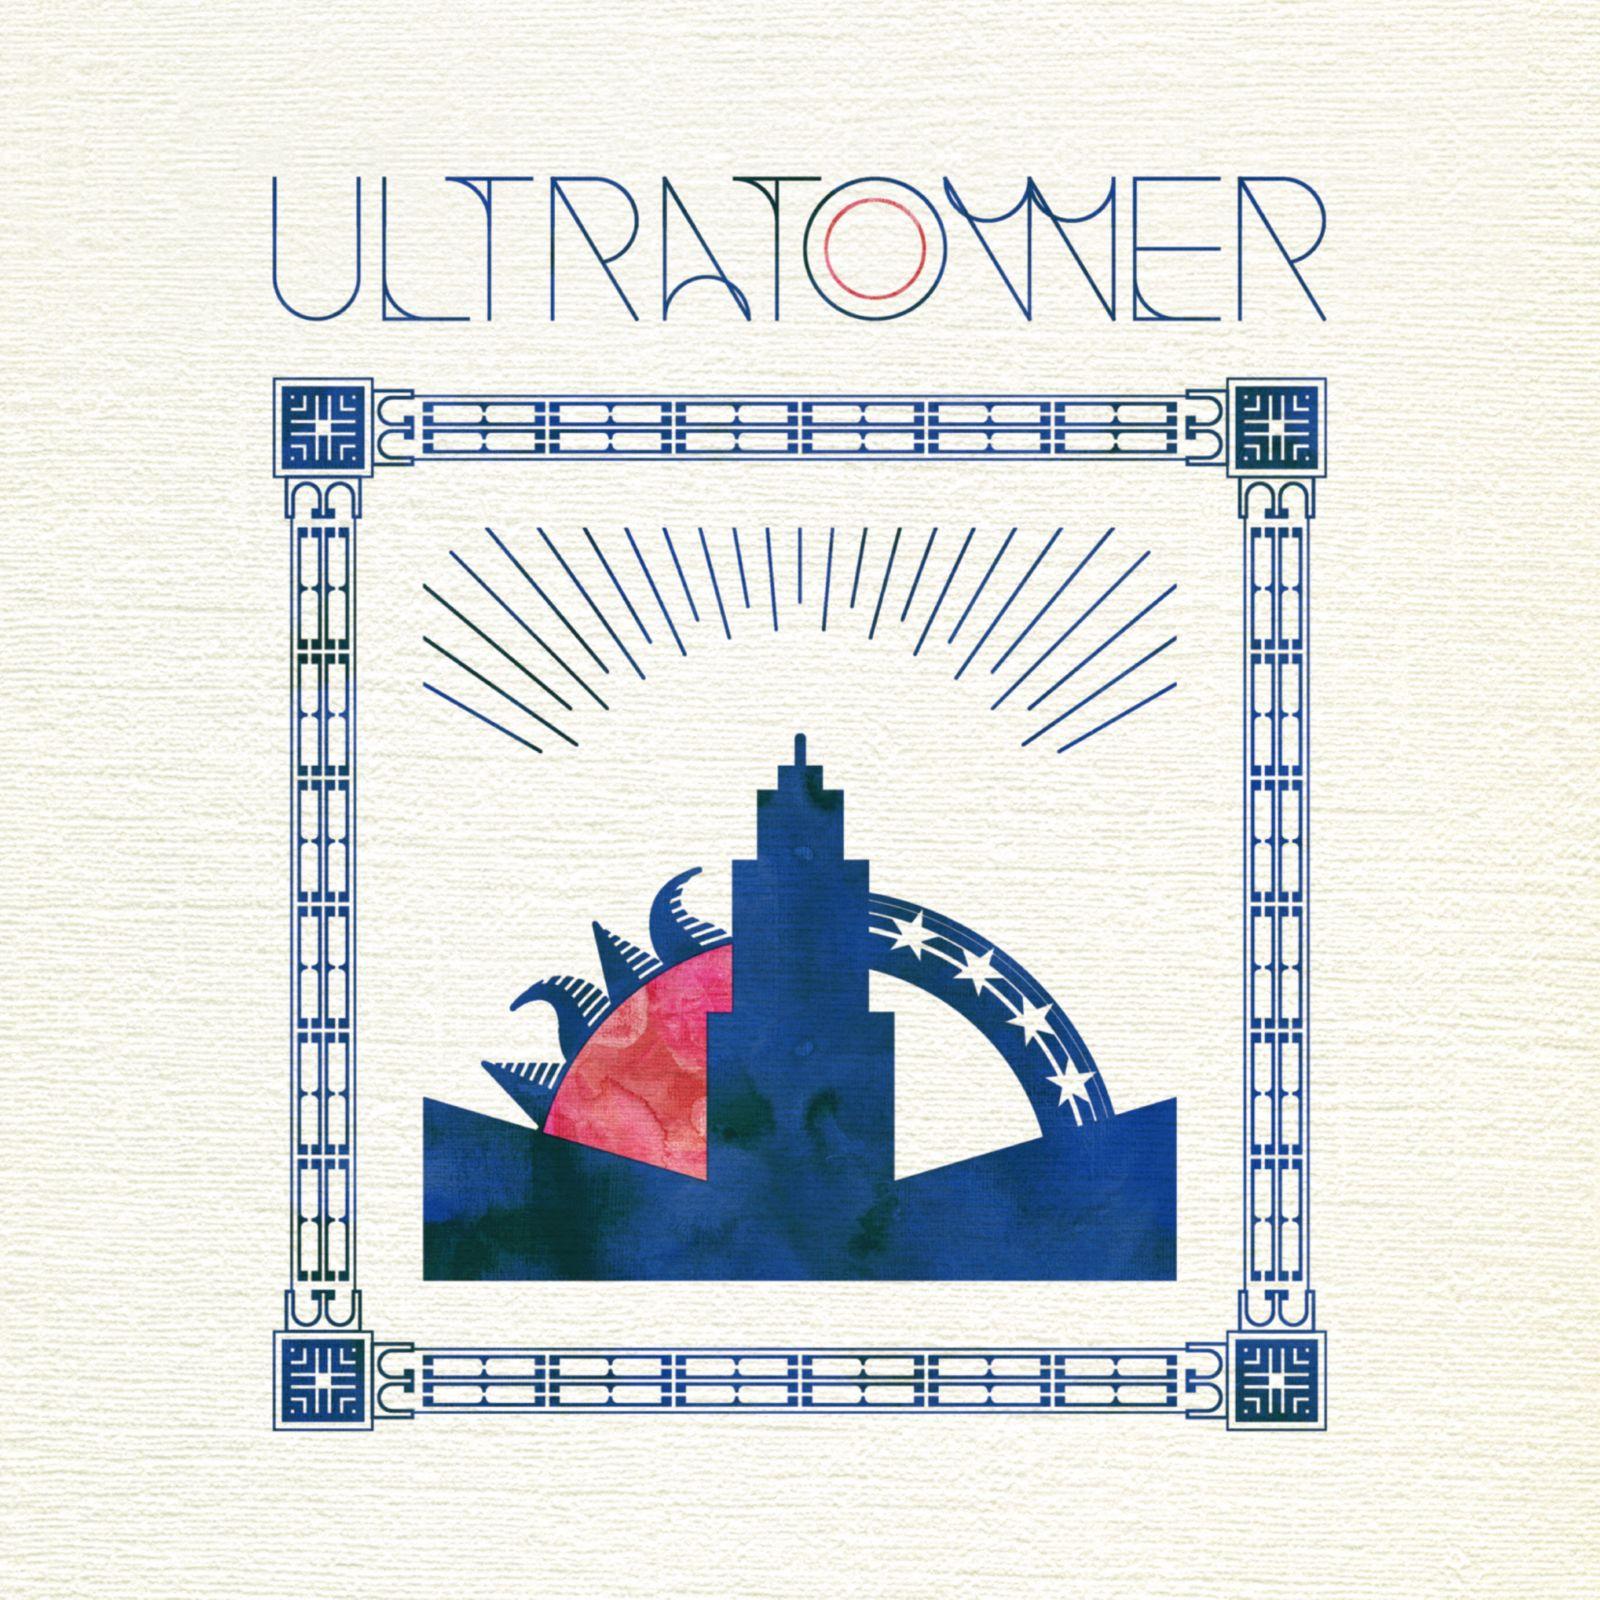 暇な夜、雨が降る歌词 歌手ULTRA TOWER-专辑太陽と月の塔-单曲《暇な夜、雨が降る》LRC歌词下载